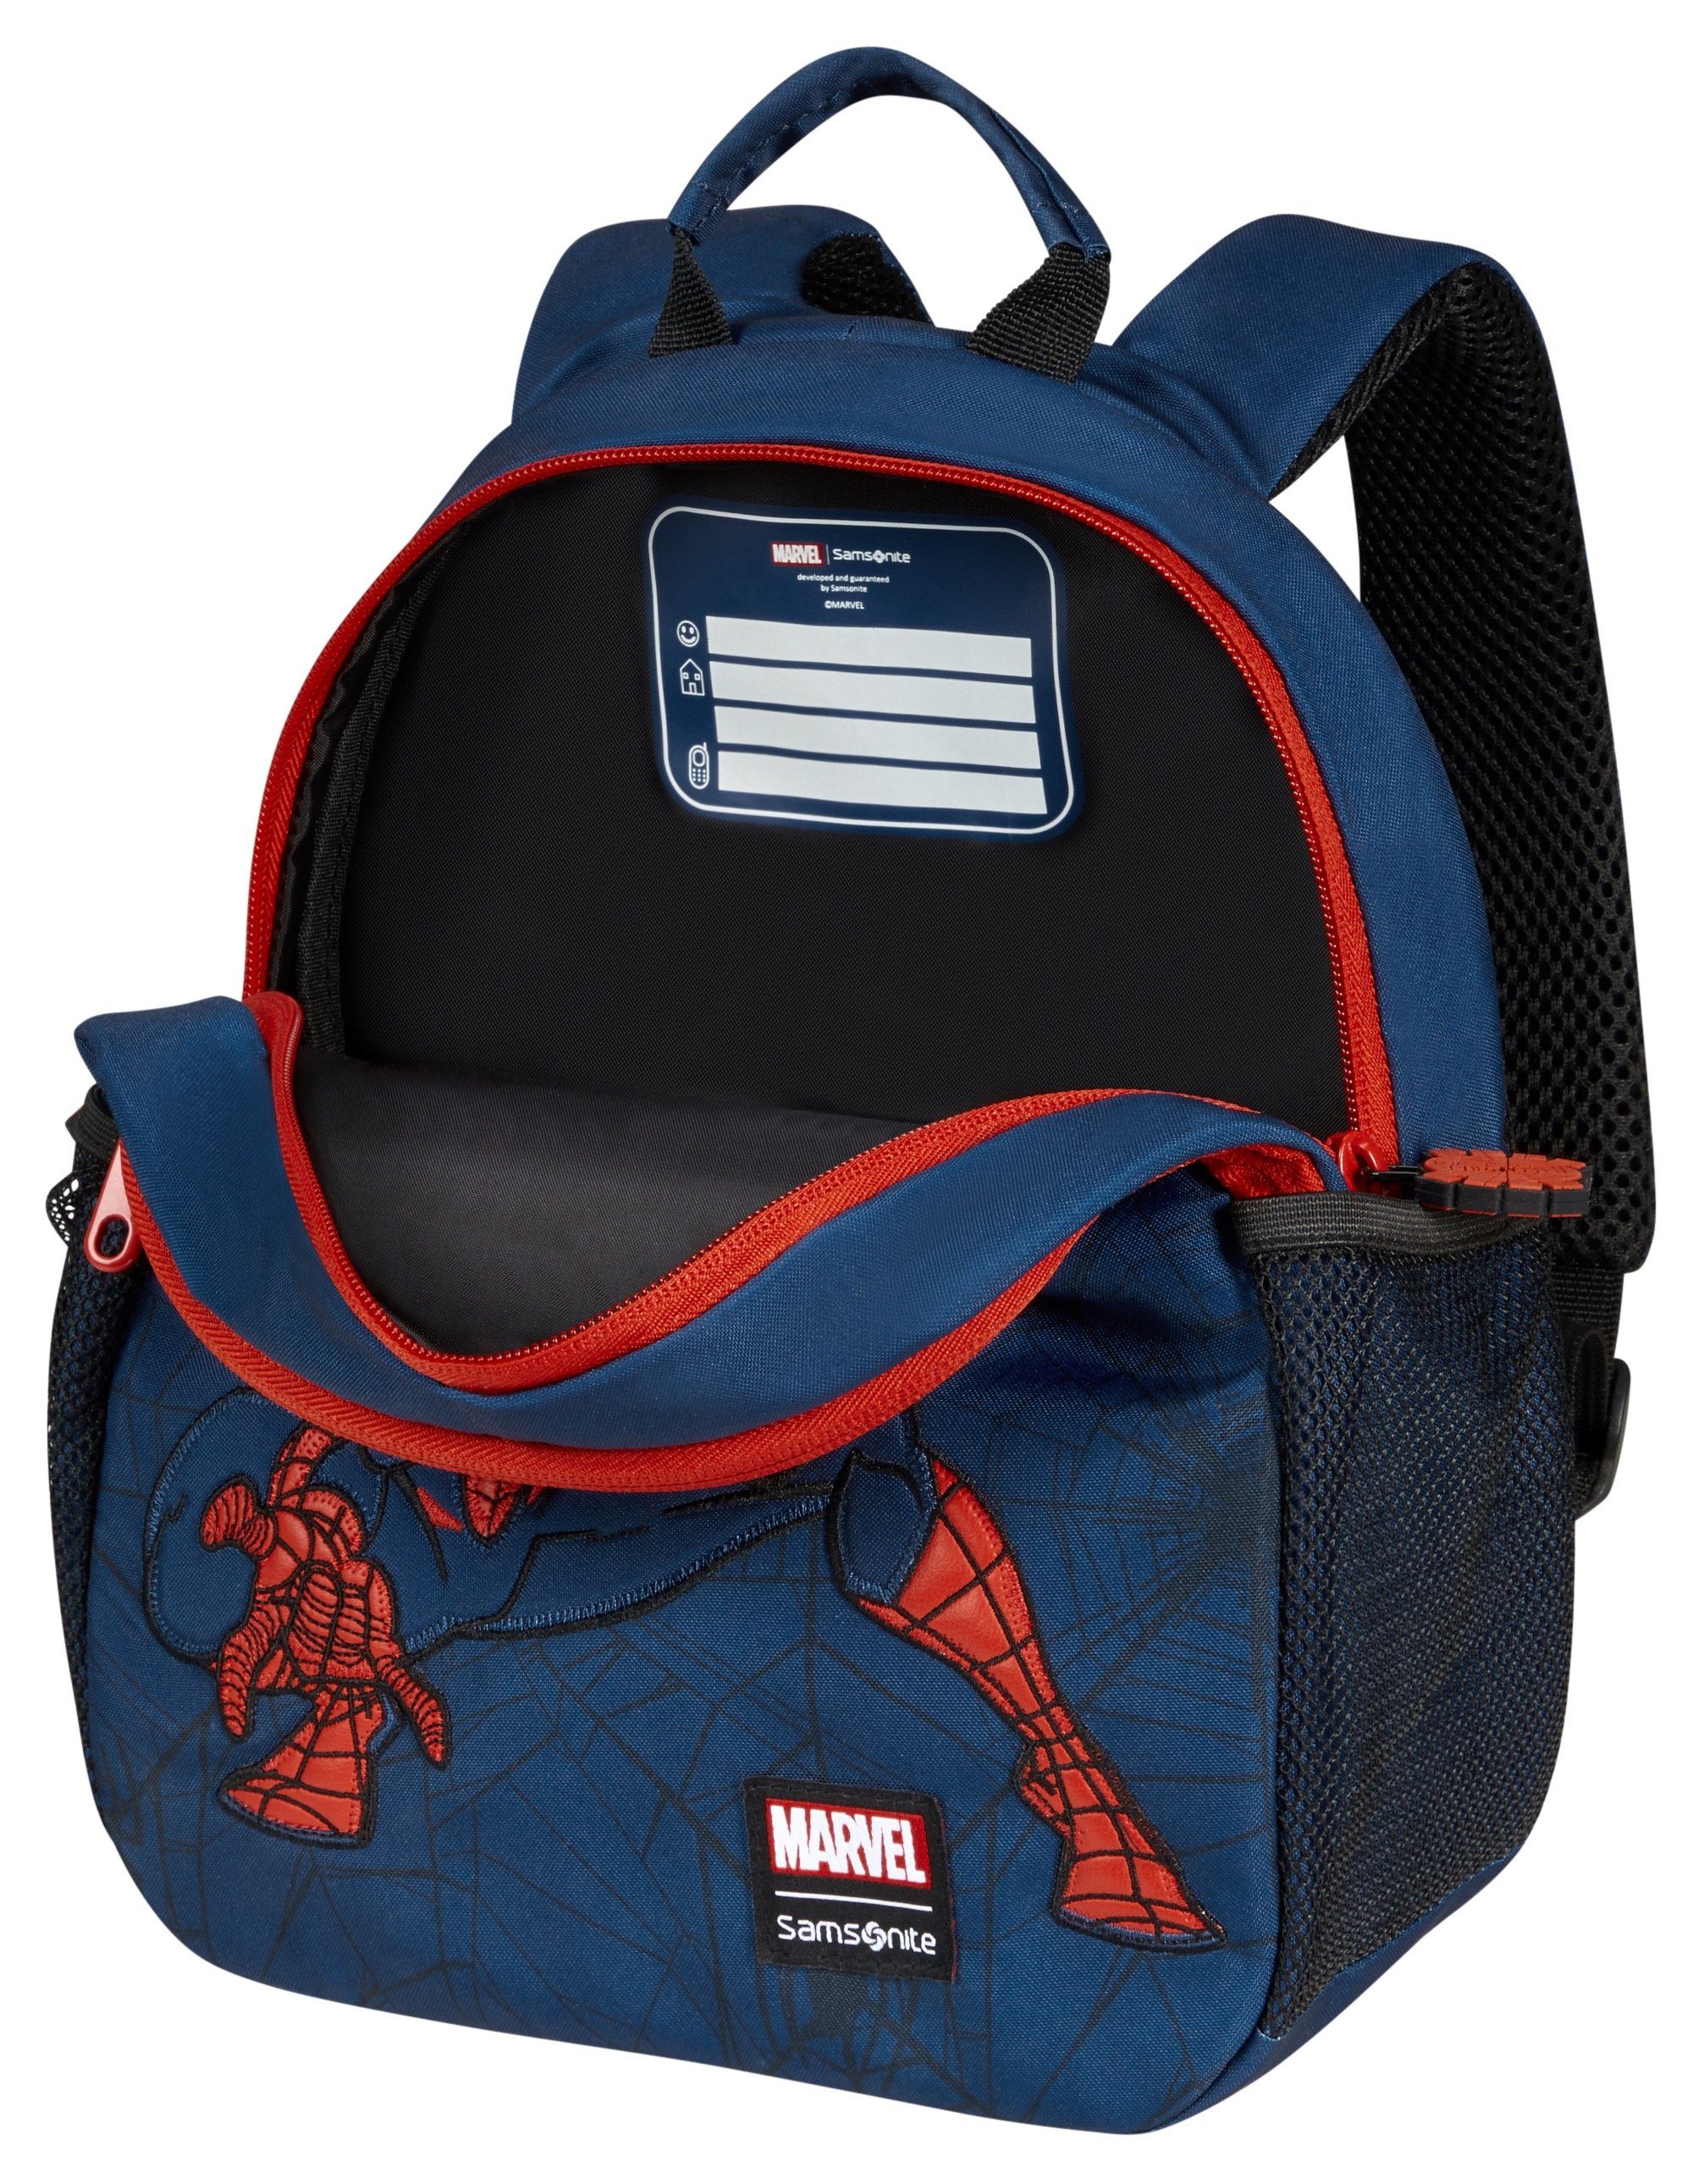 Marvel Samsonite Material Ultimate recyceltem 2.0 Kinderrucksack aus Disney web, Spiderman S BP